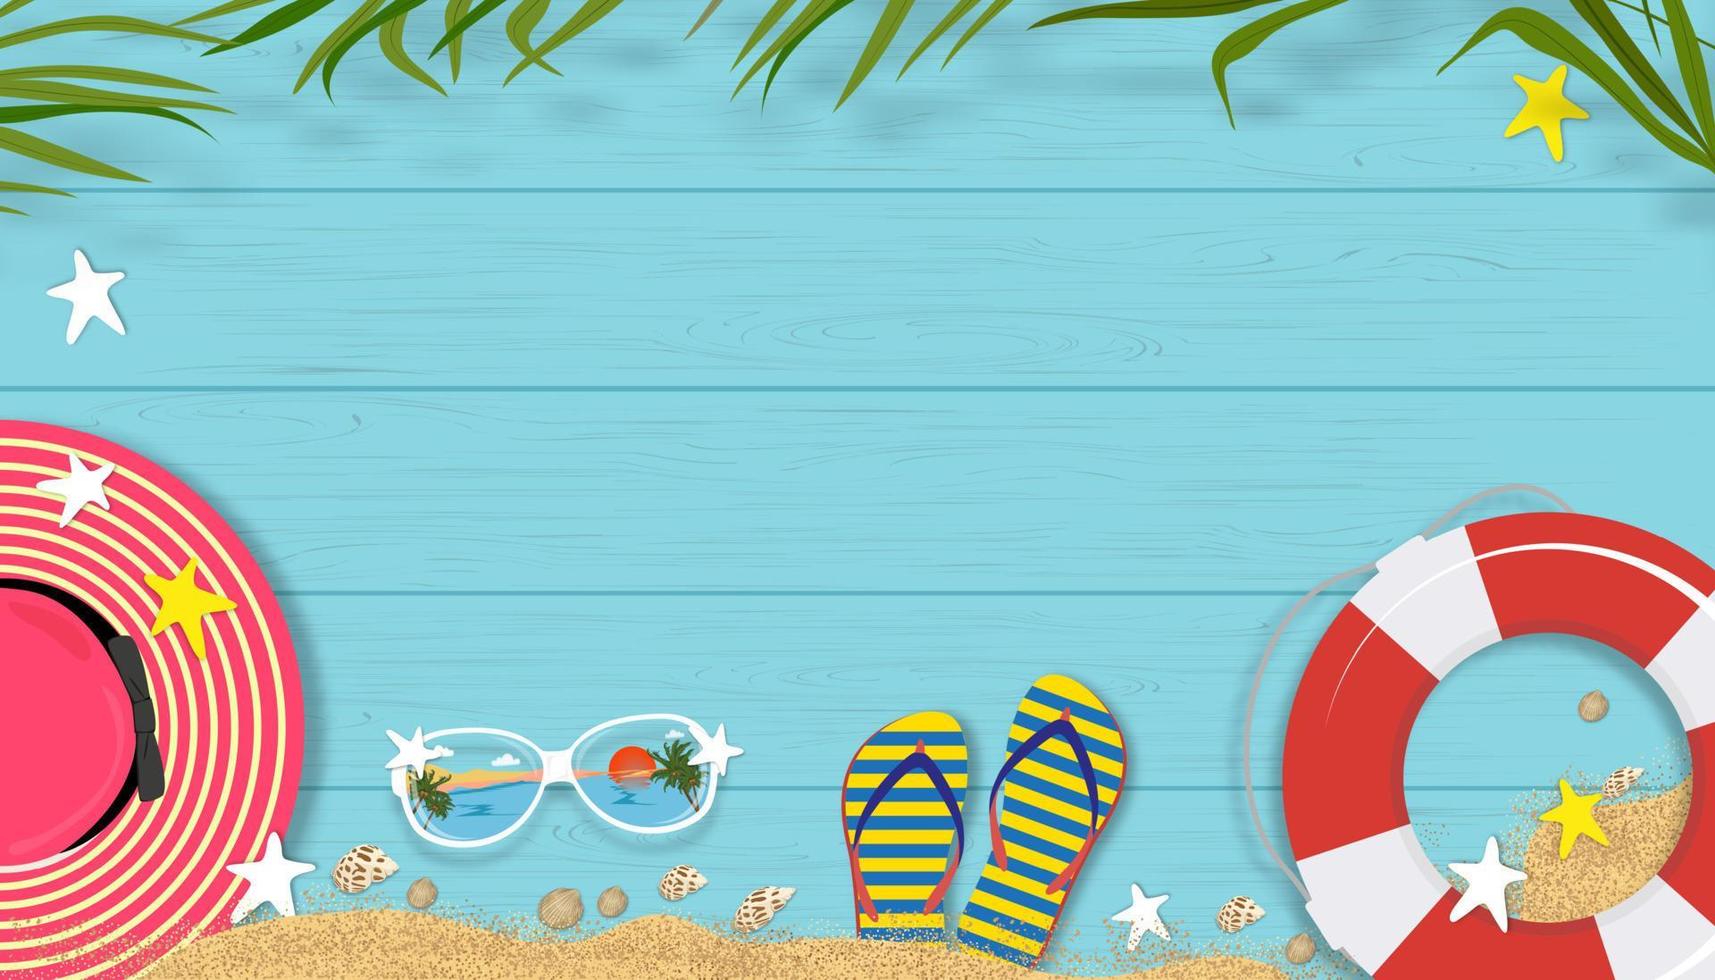 zomer achtergrond met strand vakantie vakantie thema met kopie ruimte op blauwe houten paneel, vector horizon banner plat lag tropische zomer ontwerp met kokospalm bladeren grens op houten plank textuur